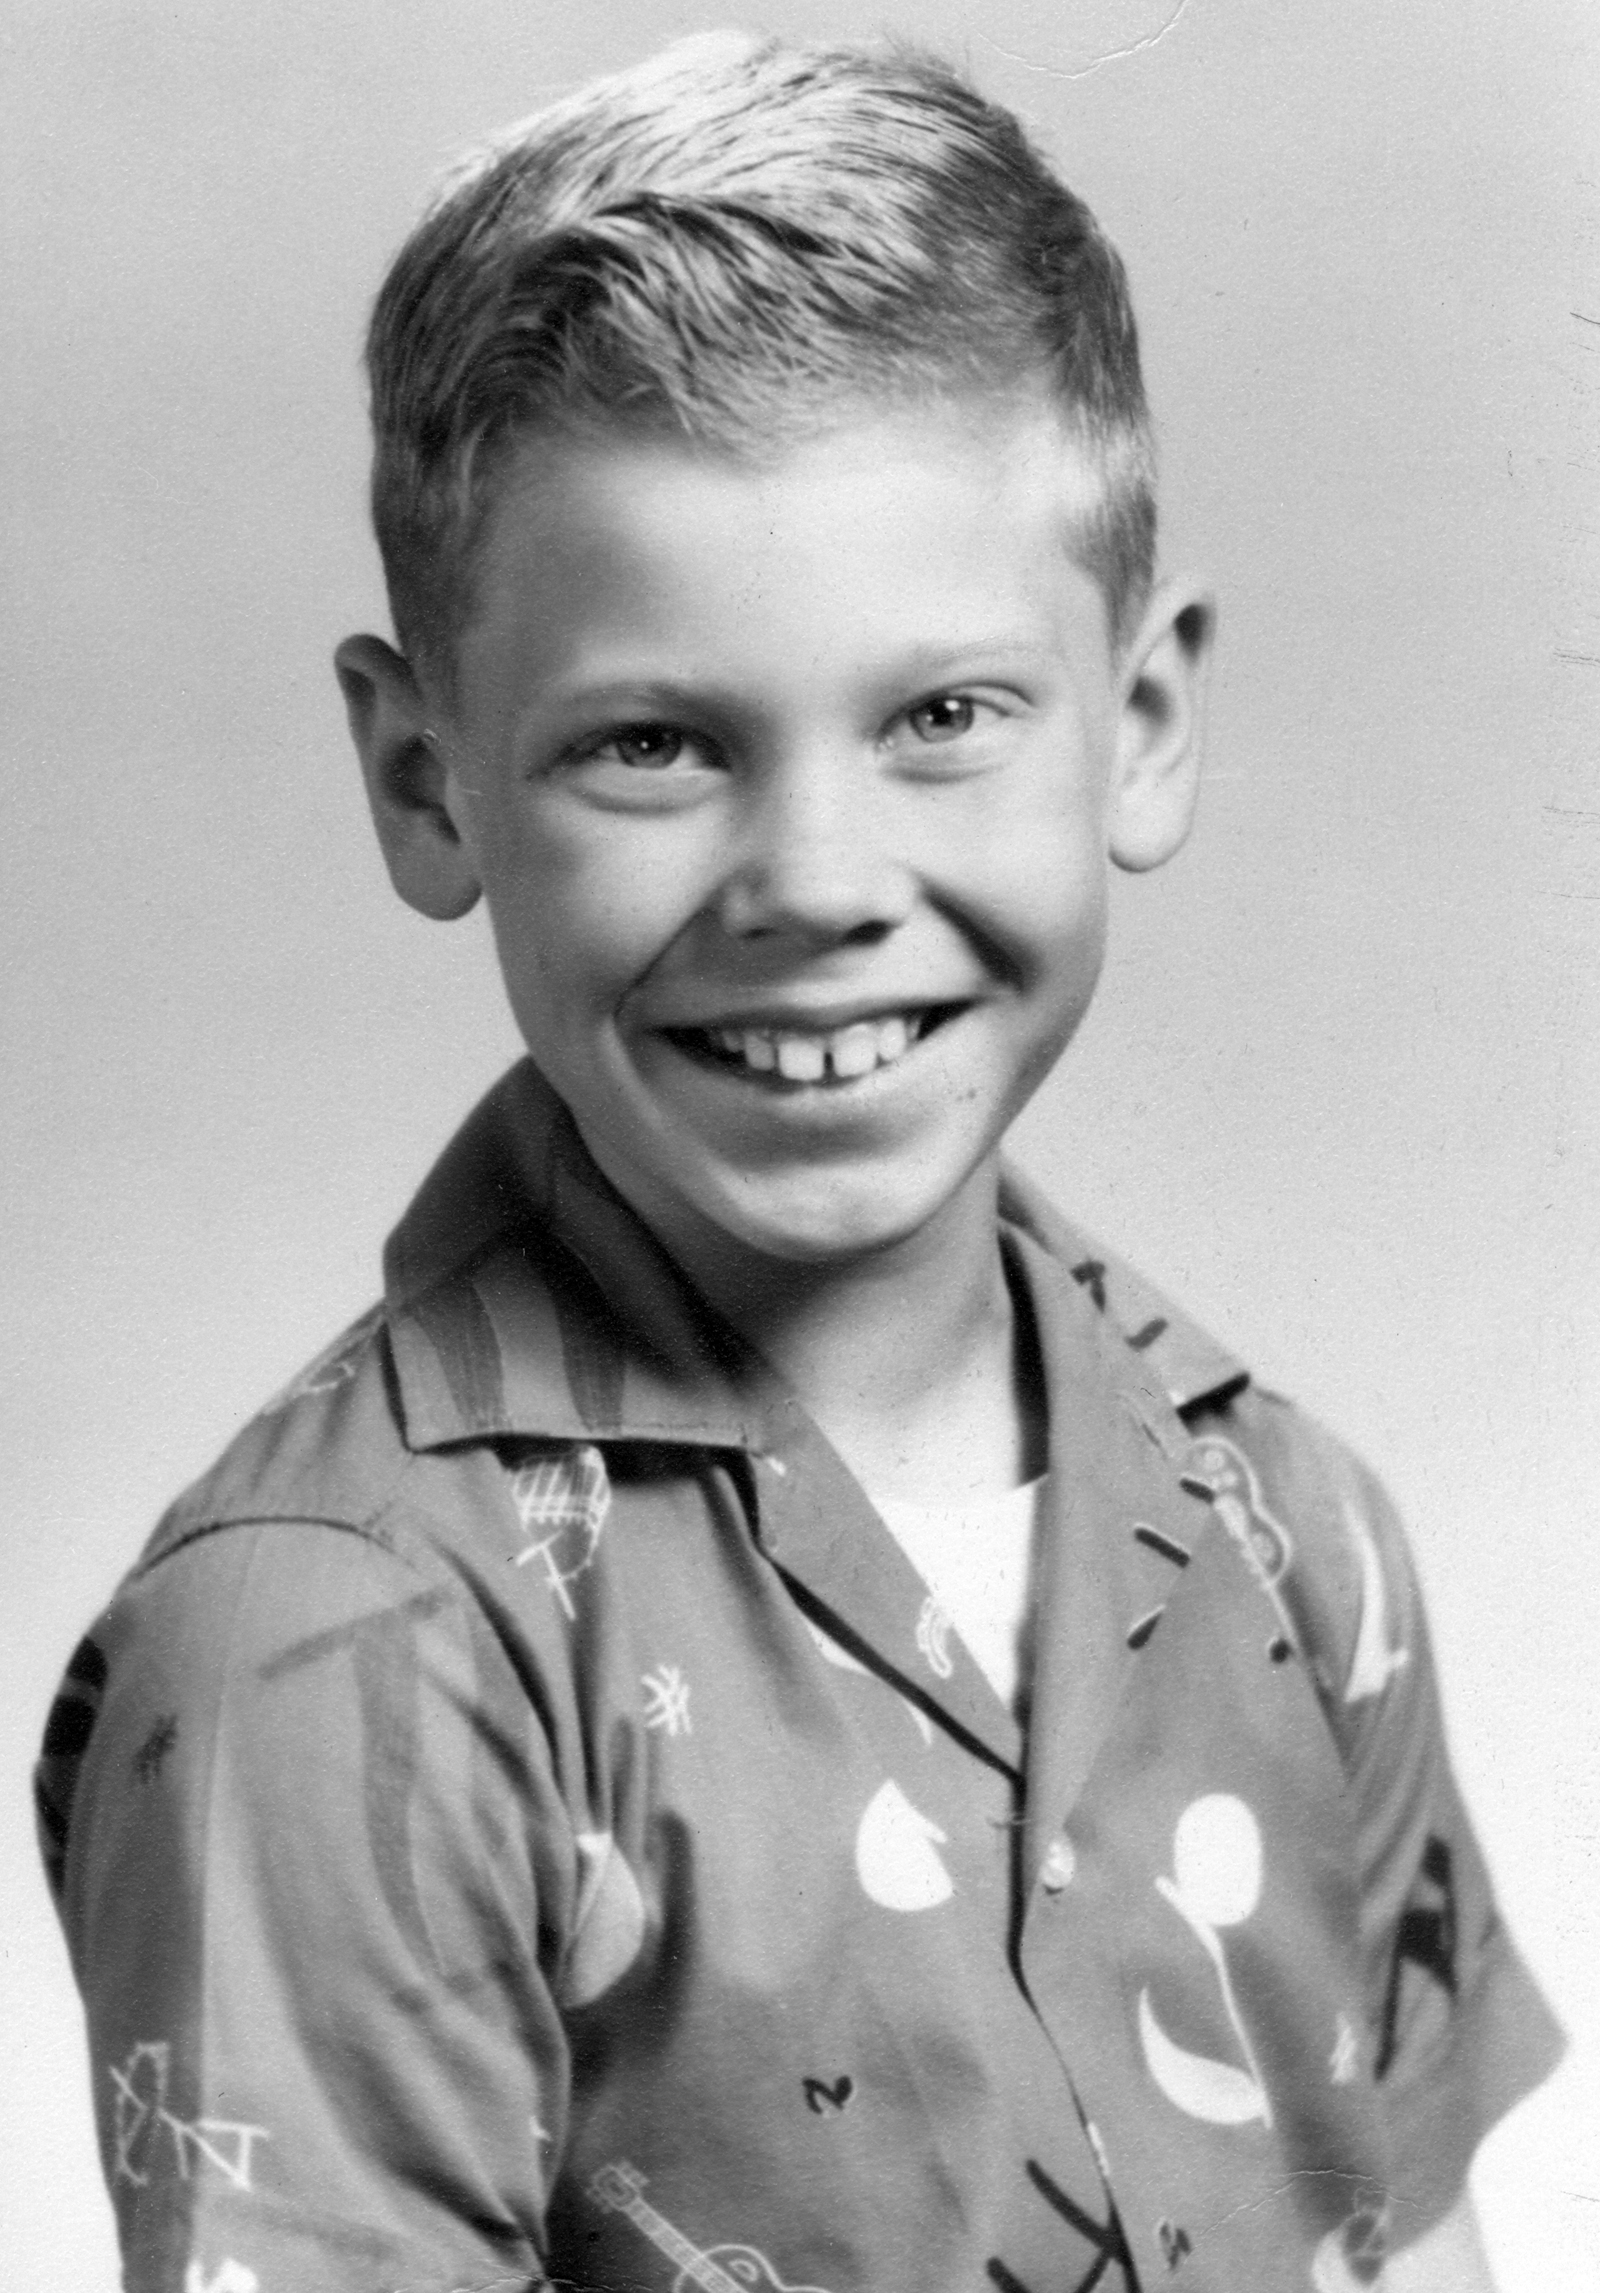 Dennis about 1955